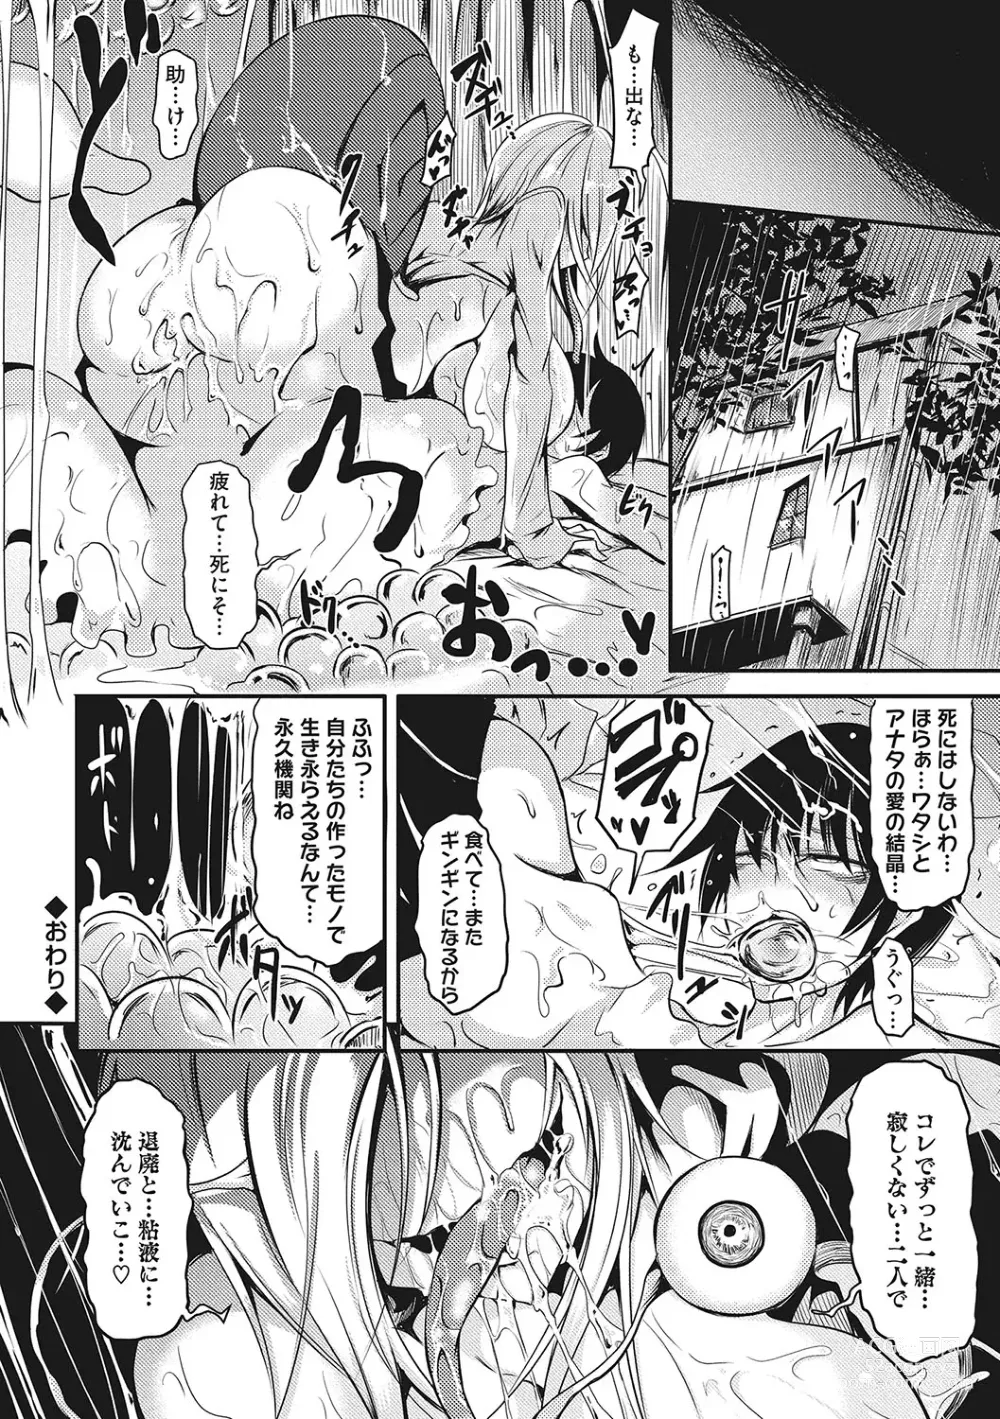 Page 271 of manga Sanpai Shoujo